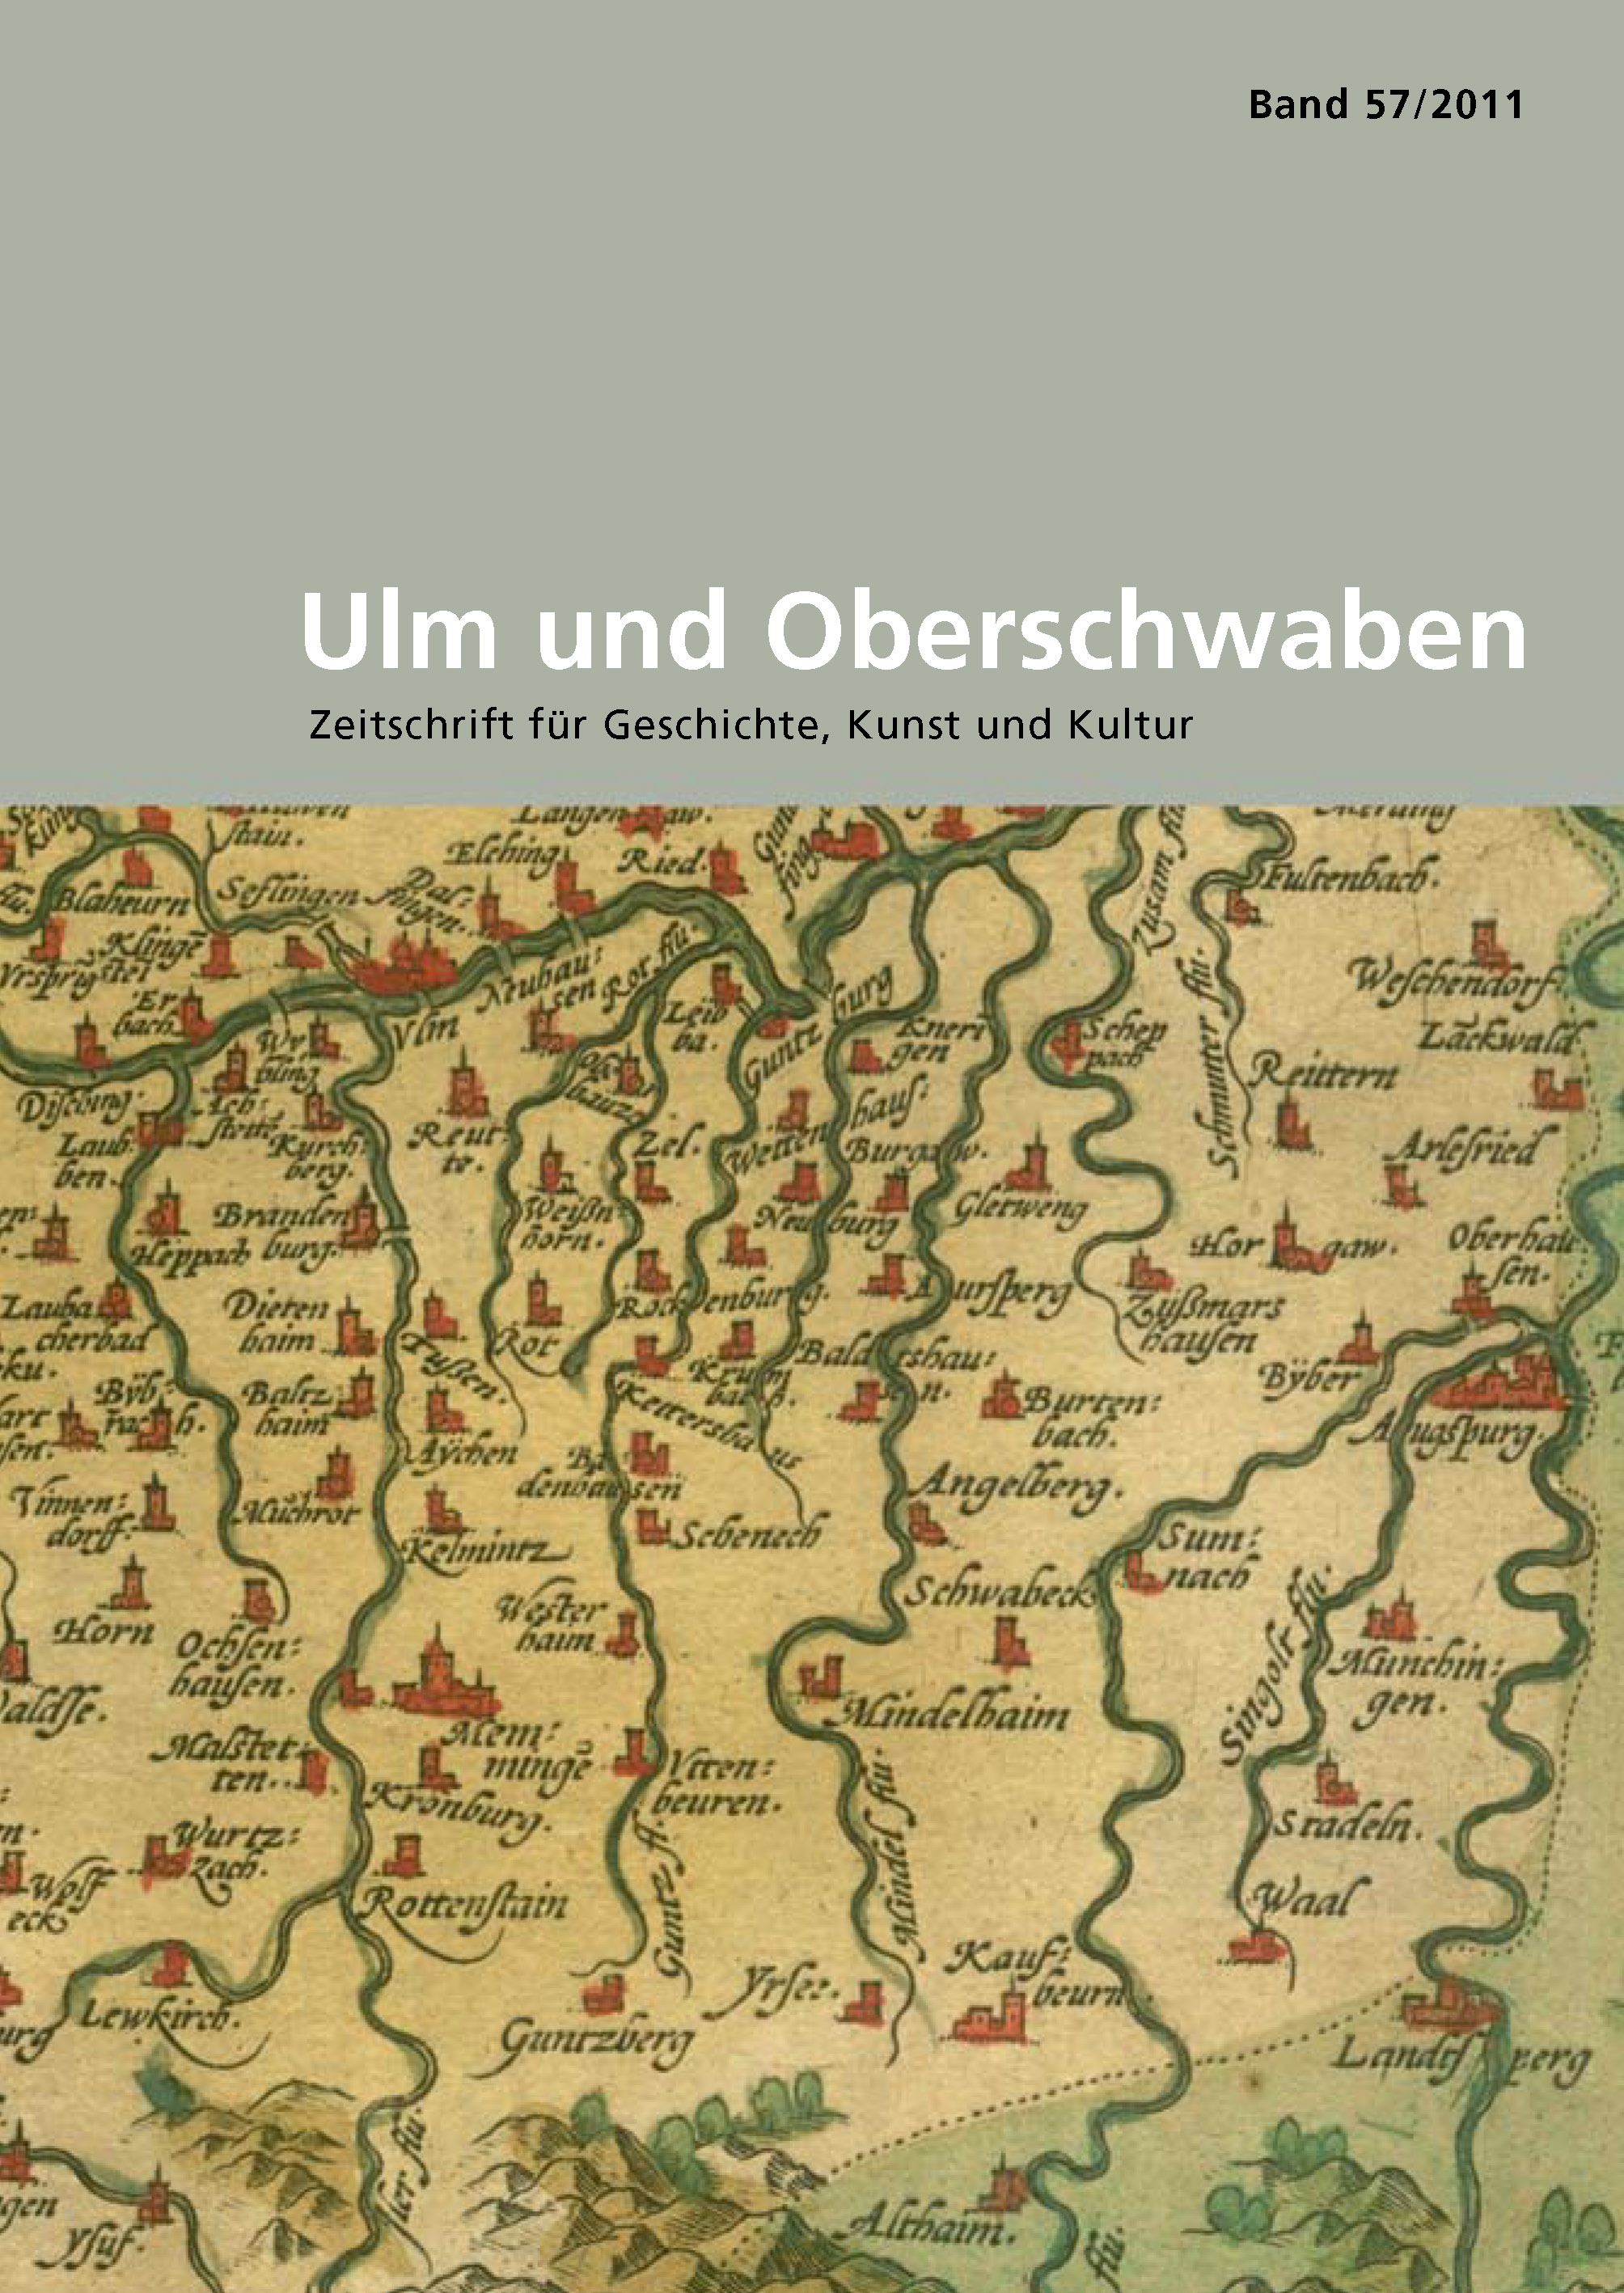                     Ansehen Bd. 57 (2011): Ulm und Oberschwaben
                